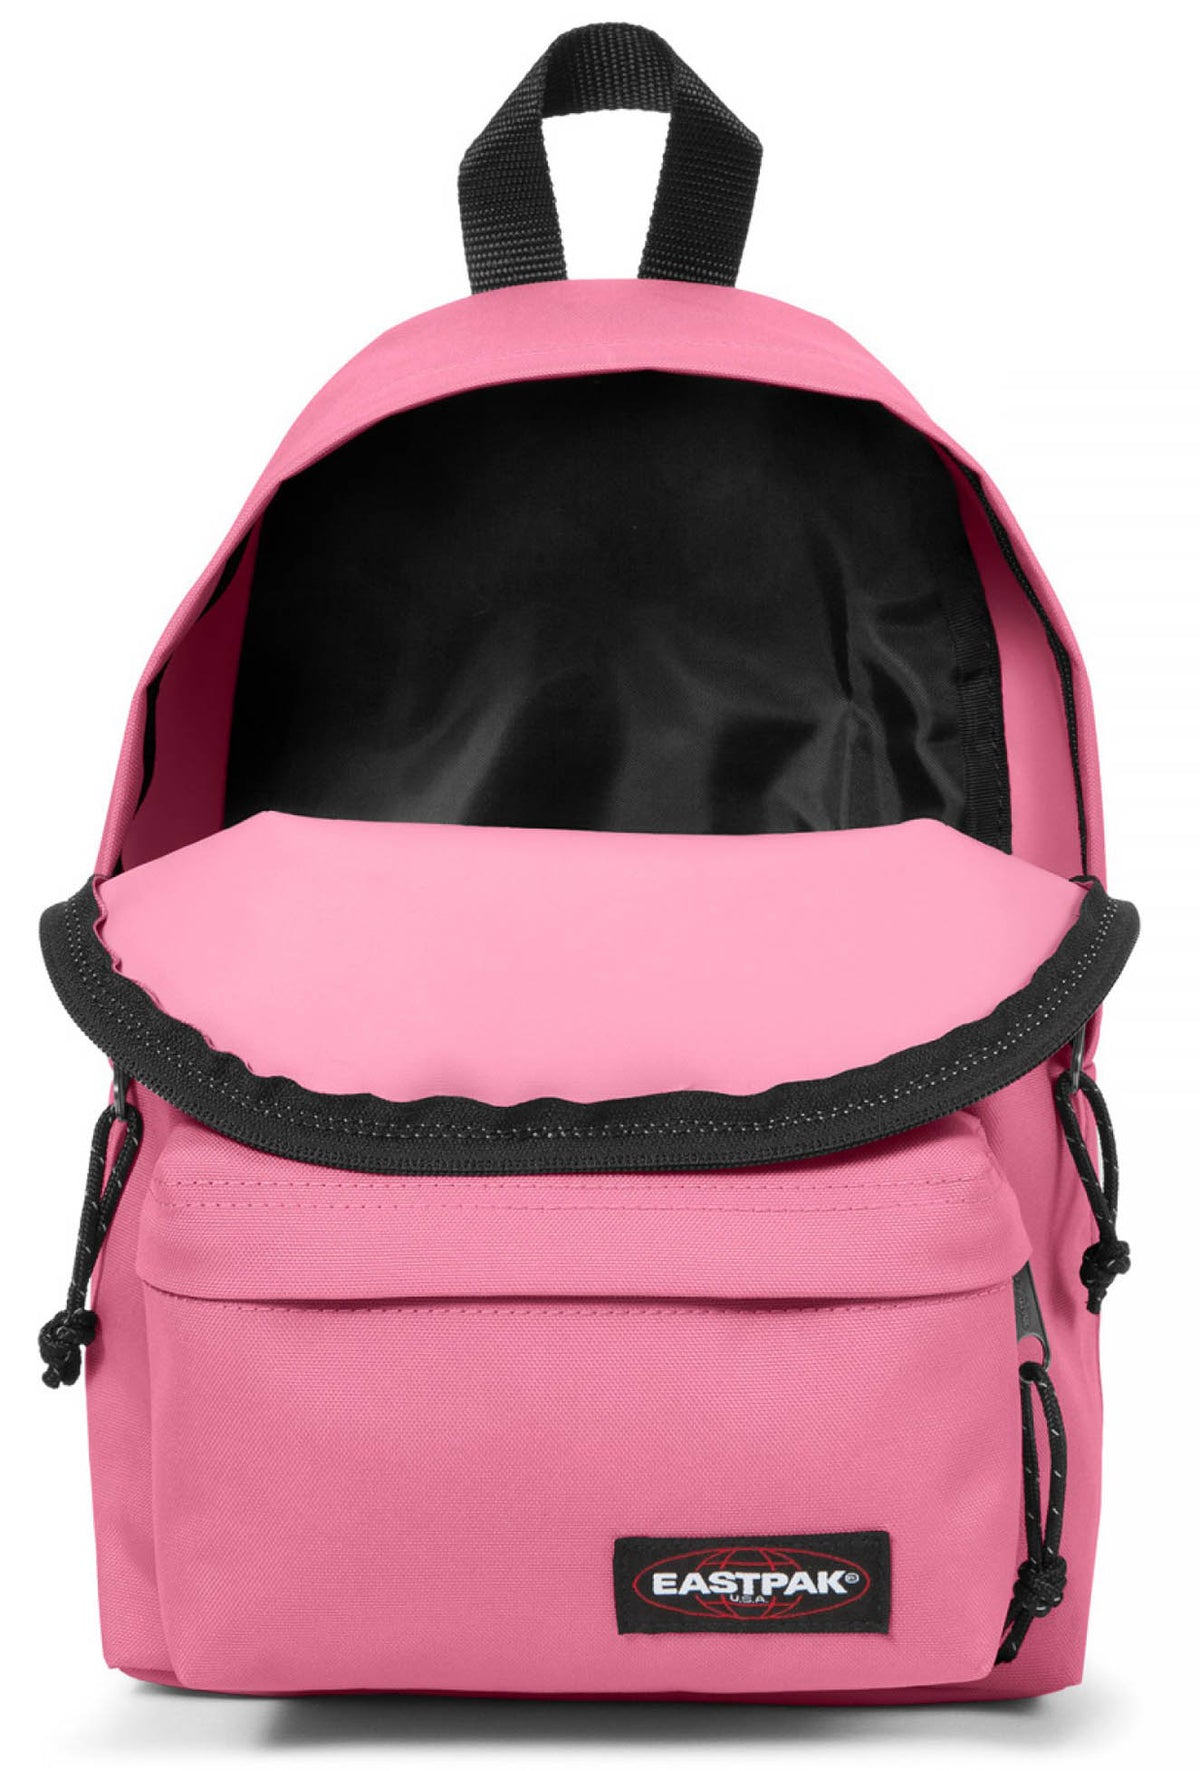 Eastpak Orbit XS Backpack - Playful Pink